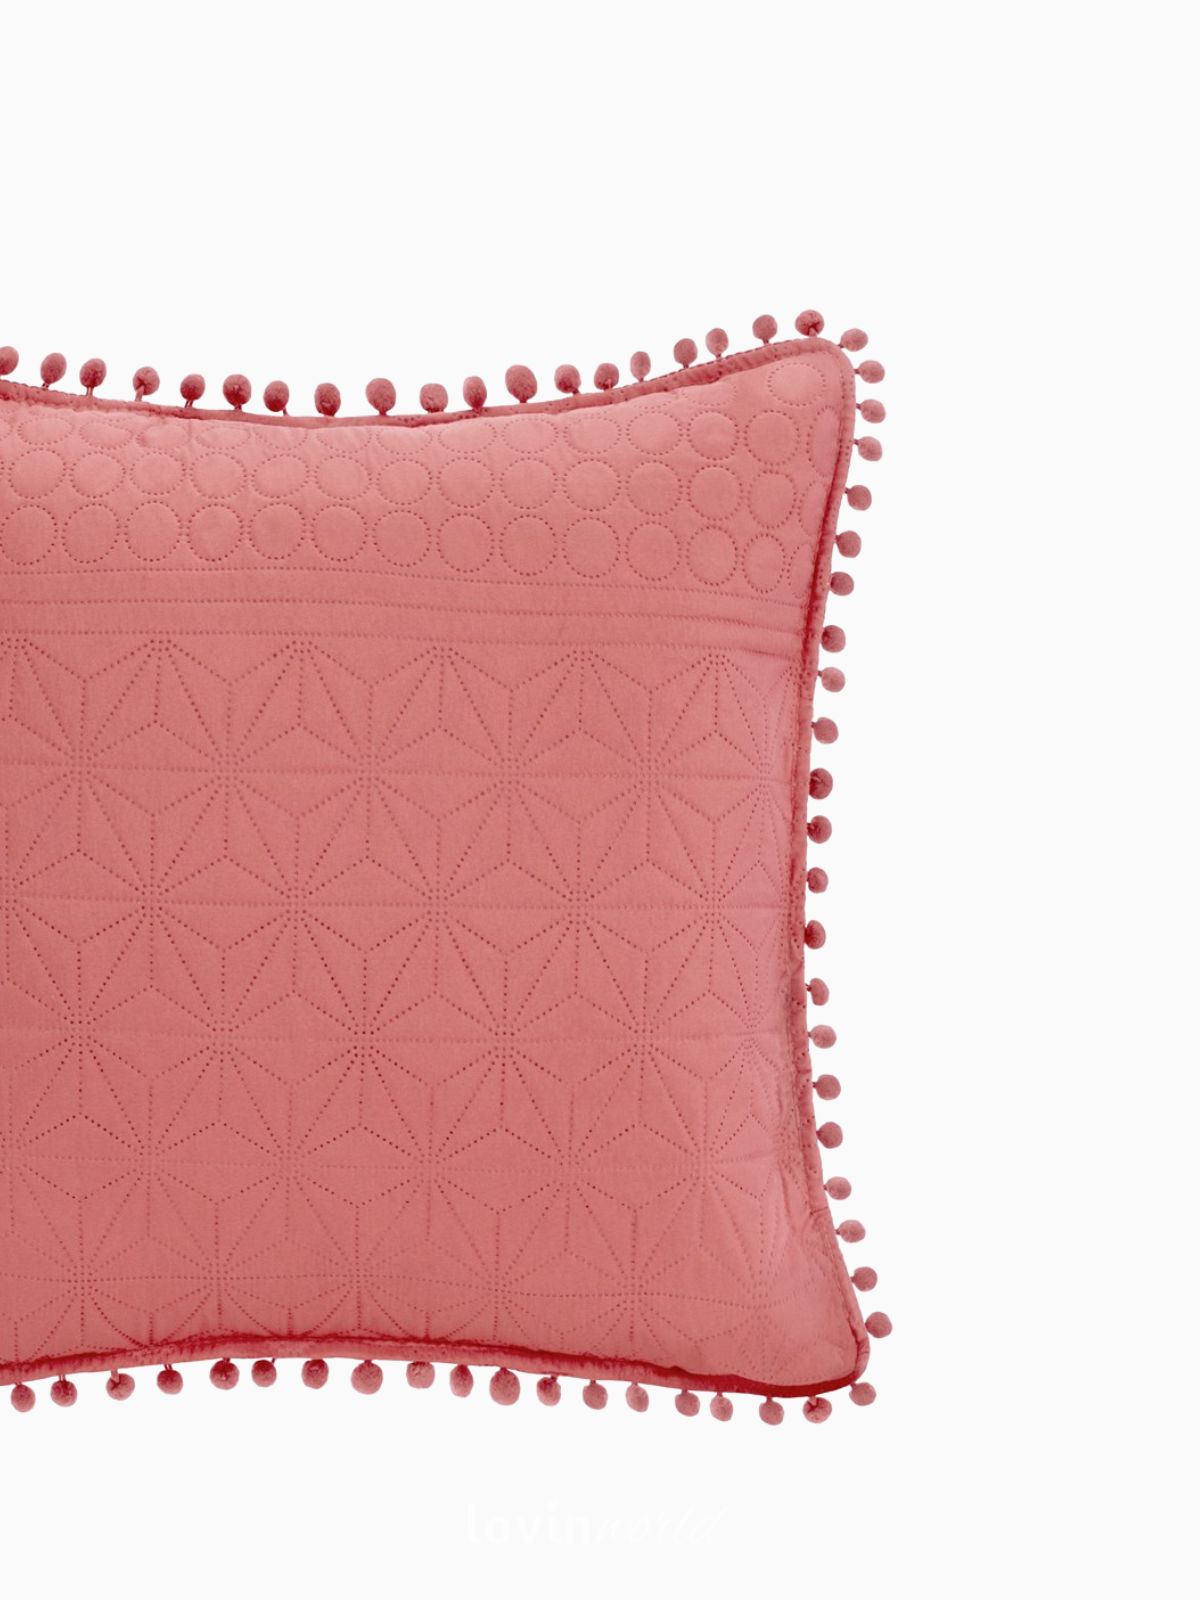 Cuscino decorativo Meadore in colore rosso 45x45 cm.-3